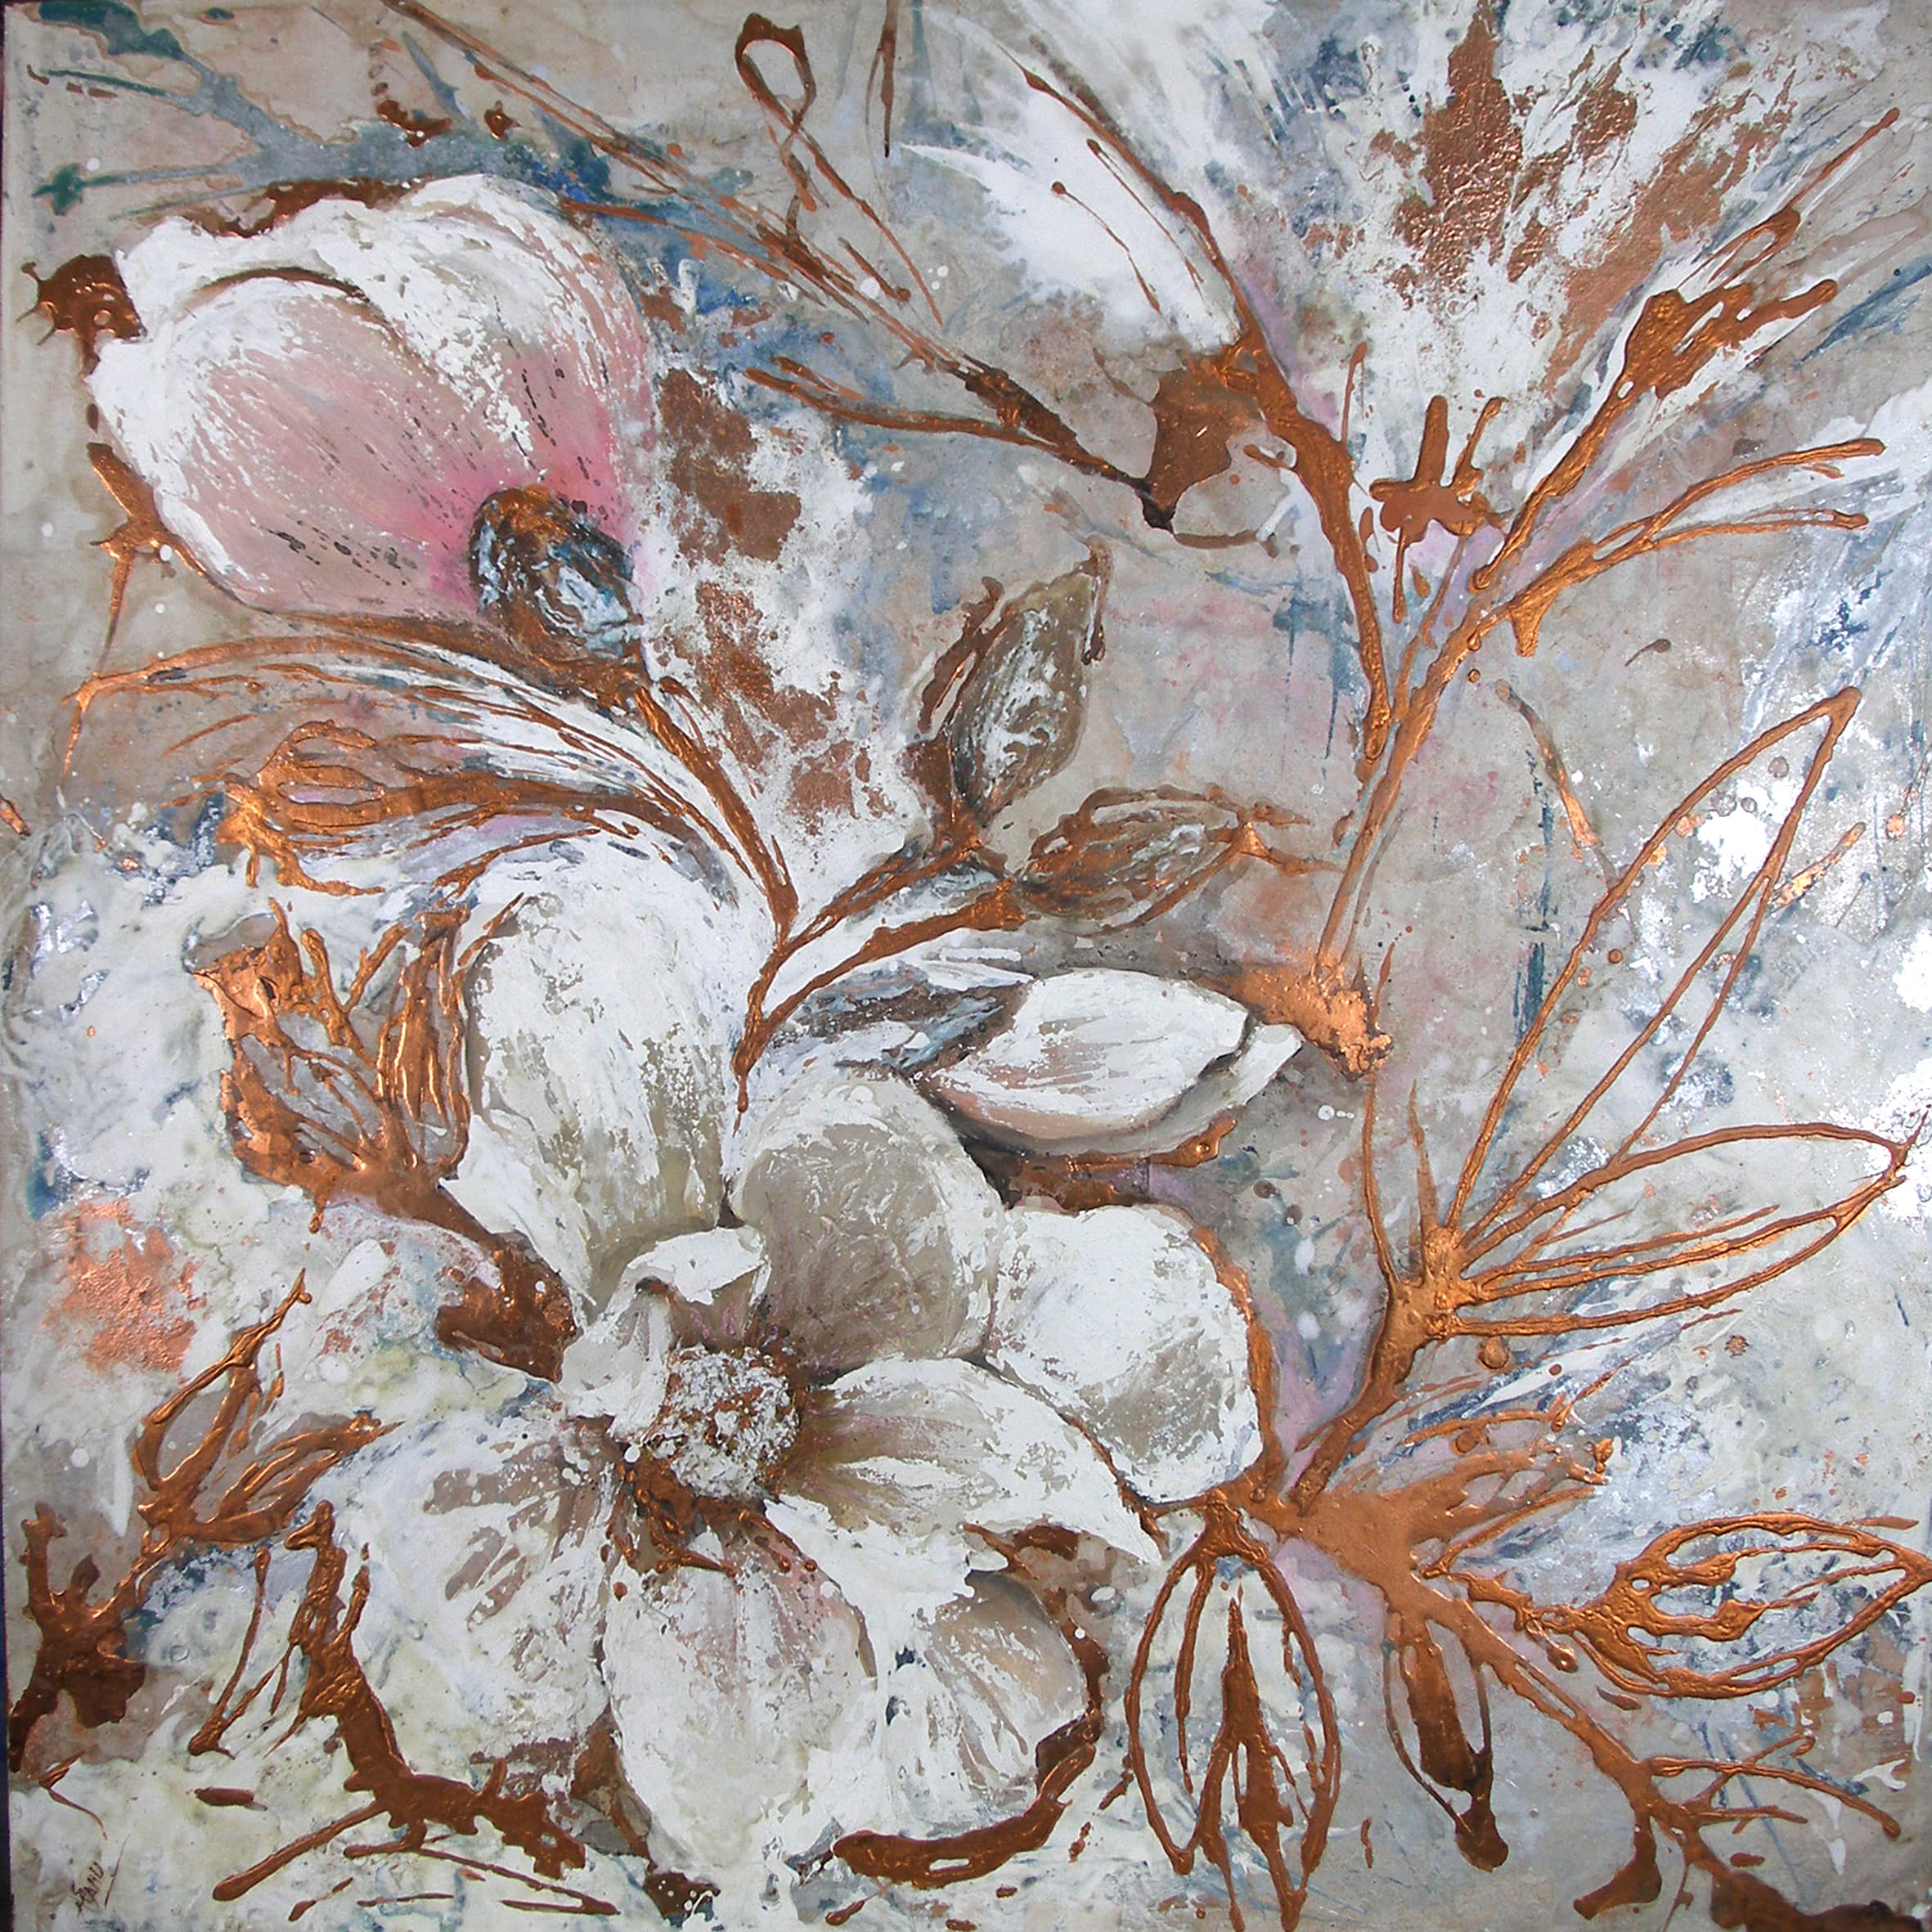 Magnolia. 1 x 1 m. Técnica mixta sobre tabla. Pintura de una magnolia (flor), usando tonos blancos acercandose a rosas en ciertos puntos.